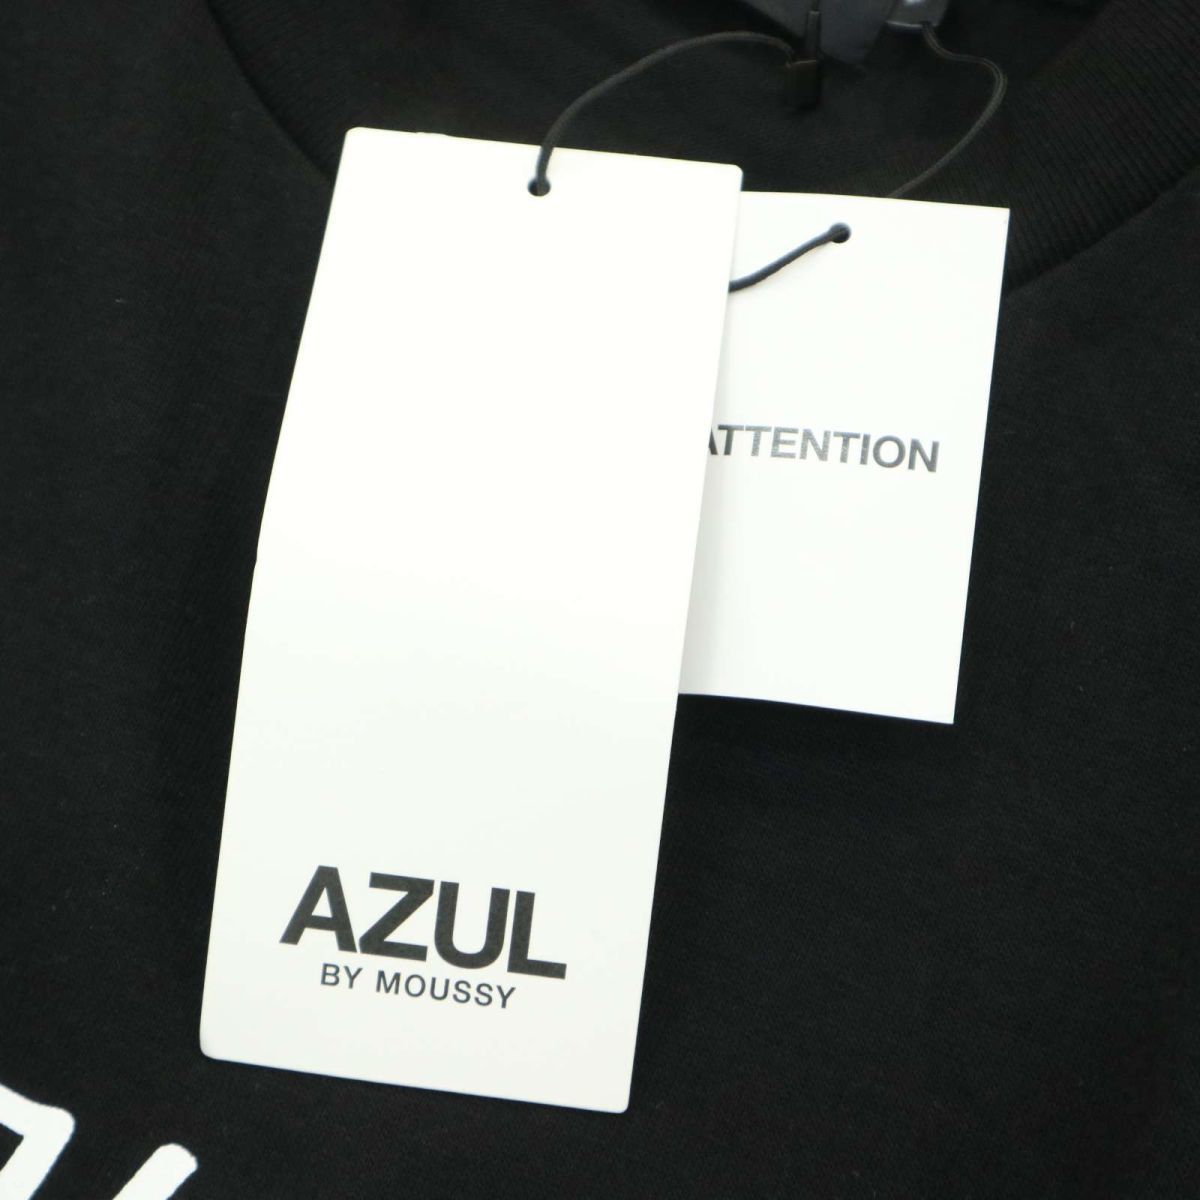  новый товар * AZUL by MOUSSY azur Moussy PASS THROUGH PHOTO TEE трикотажный джемпер с длинным рукавом футболка футболка Sz.M мужской чёрный A4T00632_1#F